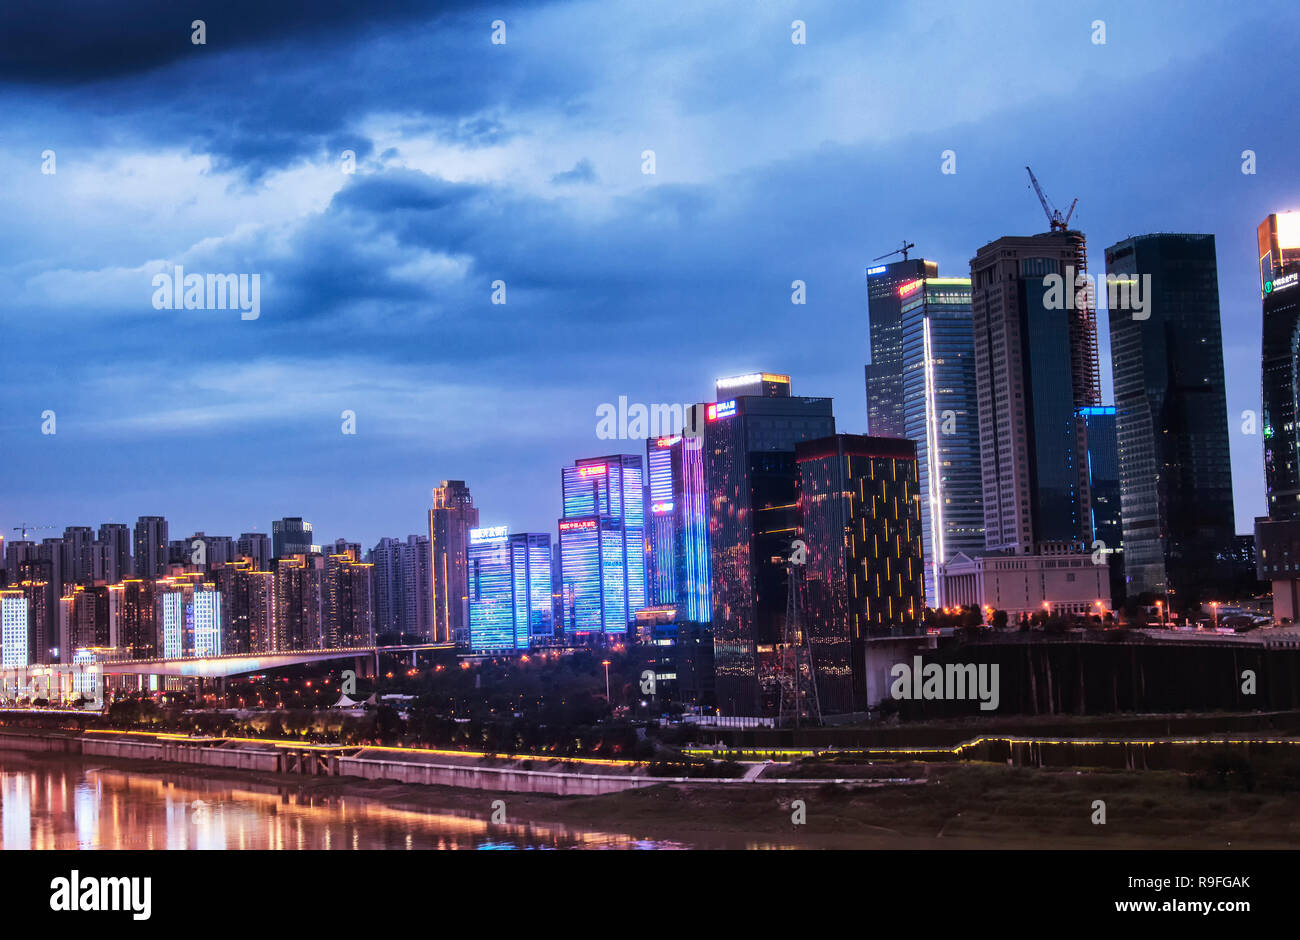 Chongqing, China. Juni 23, 2018. Ein Blick auf die Gebäude und Wolkenkratzer in der Nähe der Jialing in den Yuzhong district Chongqing China. Stockfoto